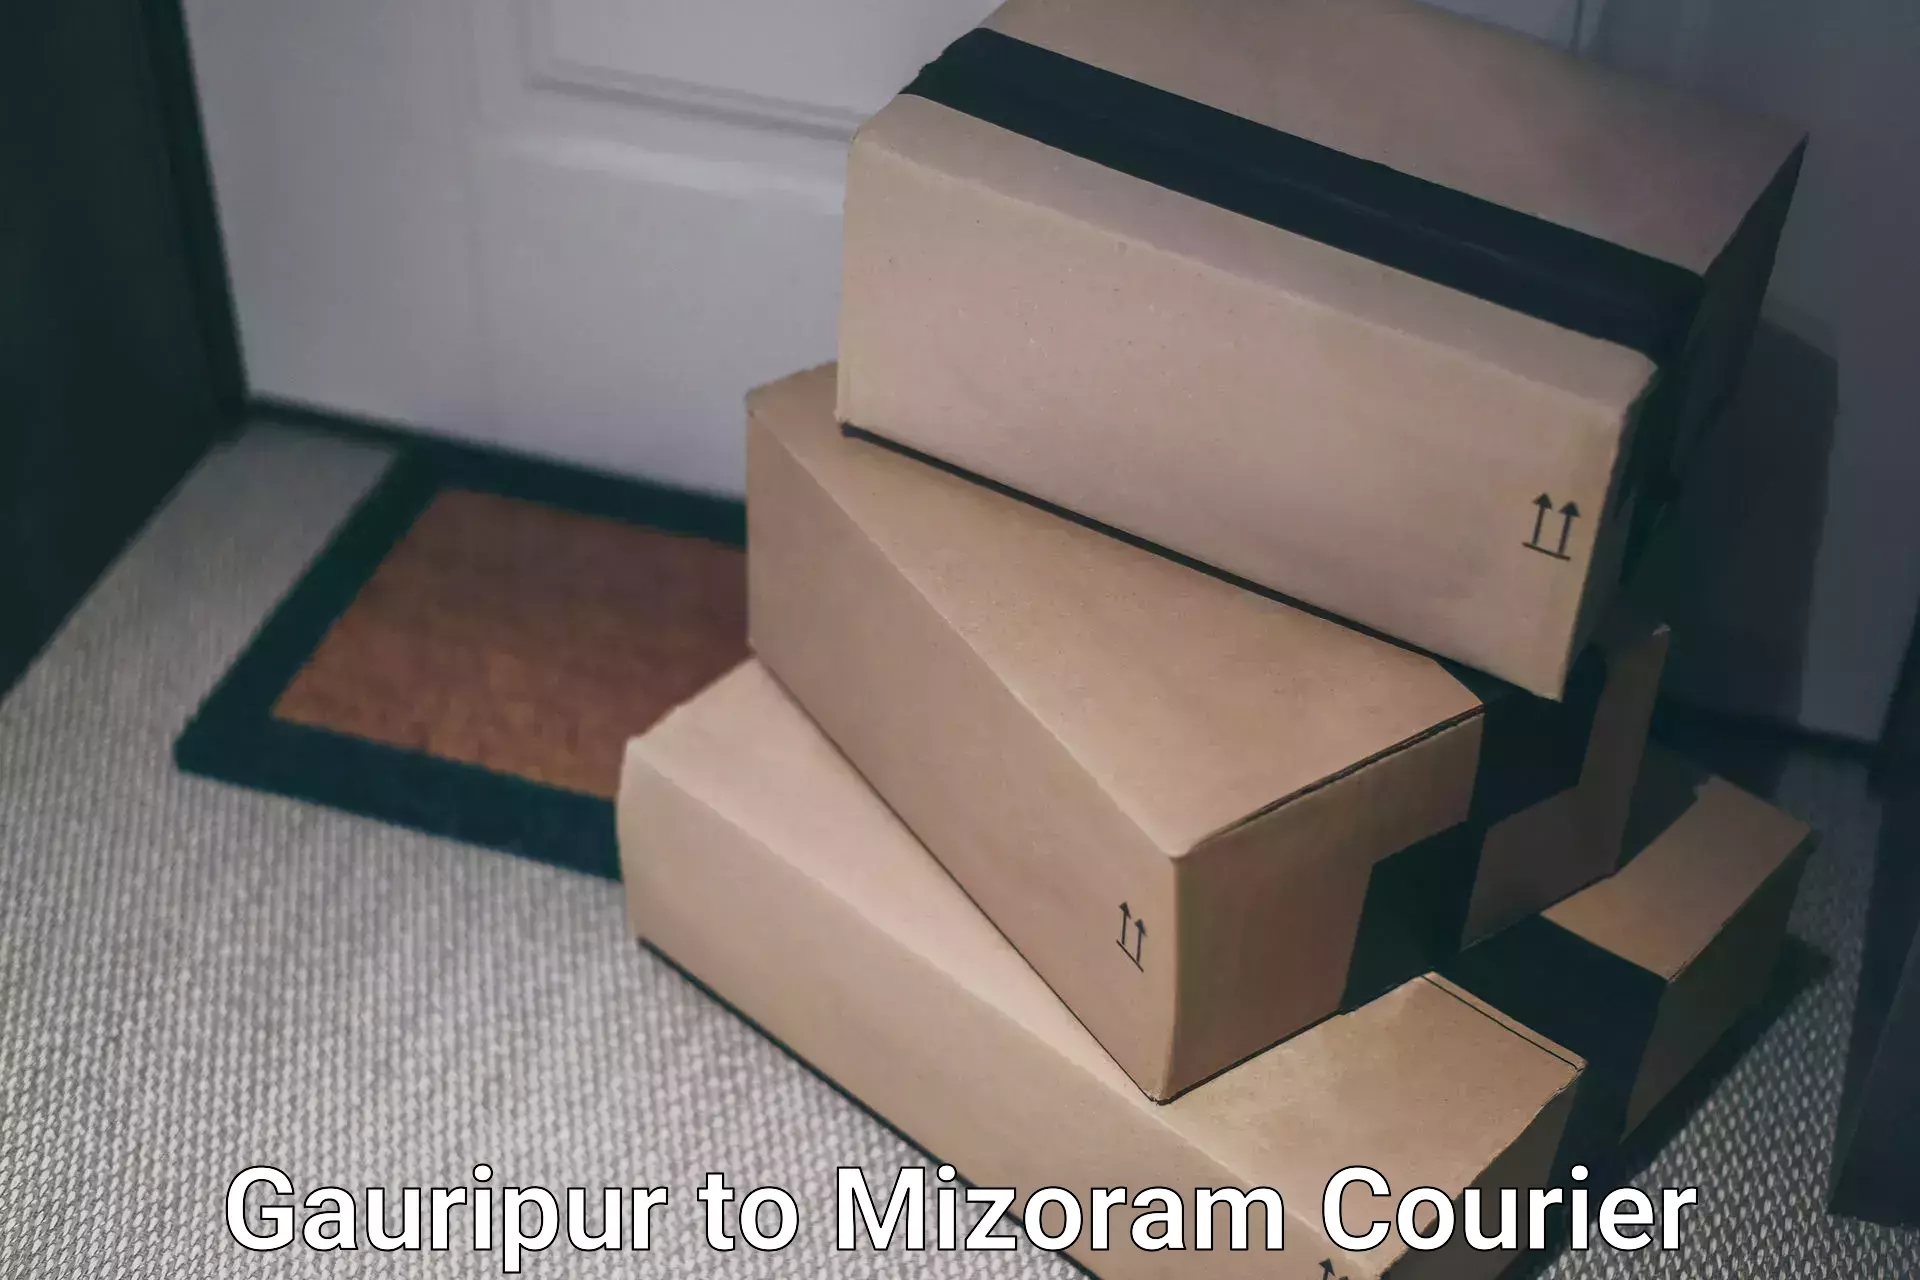 Doorstep delivery service Gauripur to Mizoram